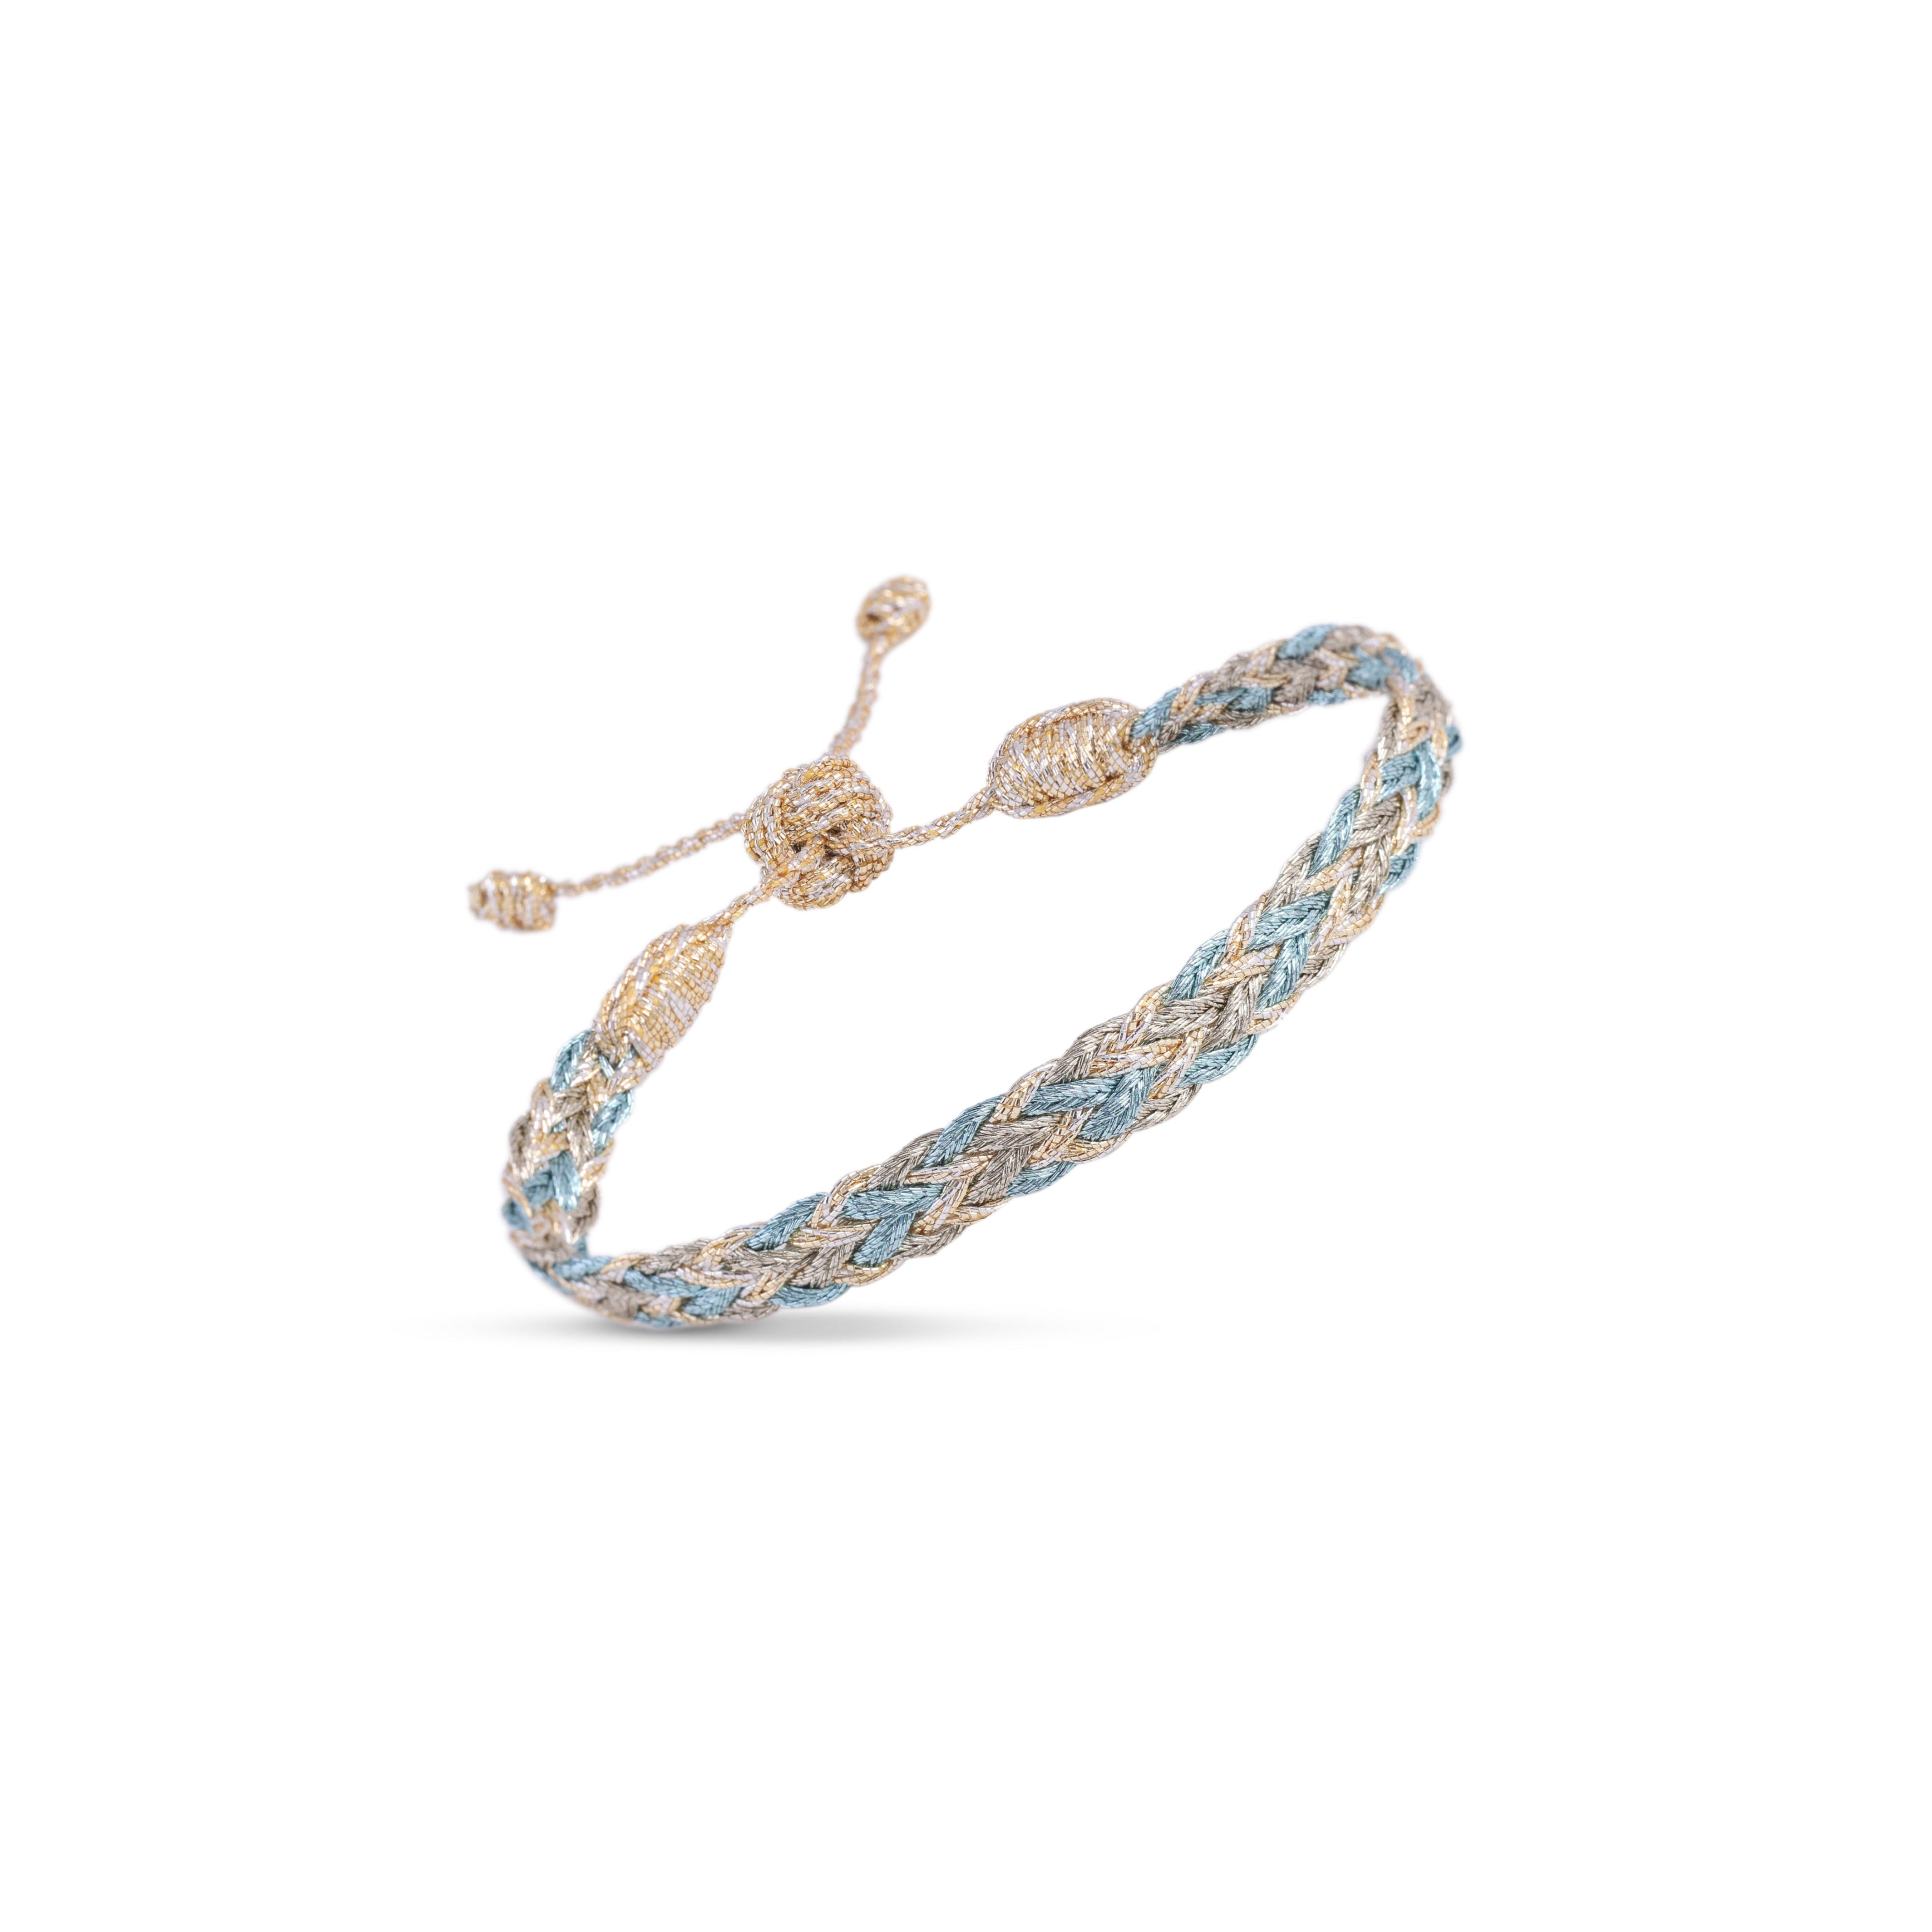 Zyn n°2 Bracelet in Gold & Silver Sky Blue